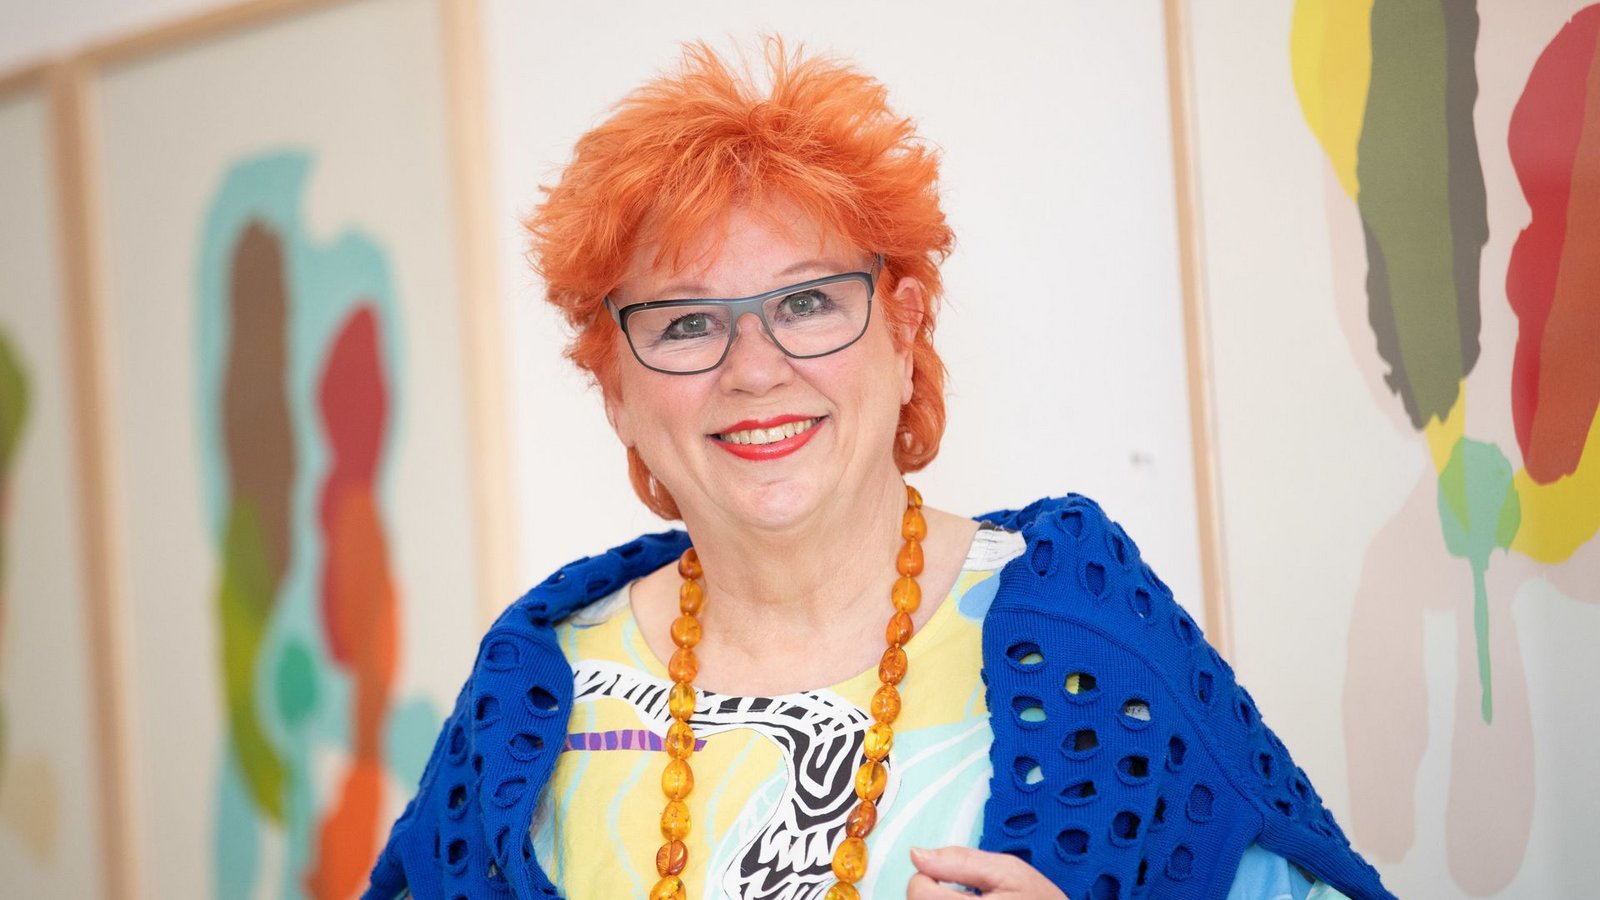 Unvergessen mit ihren roten Haaren: Richterin Barbara Salesch.Foto: dpa/Friso Gentsch